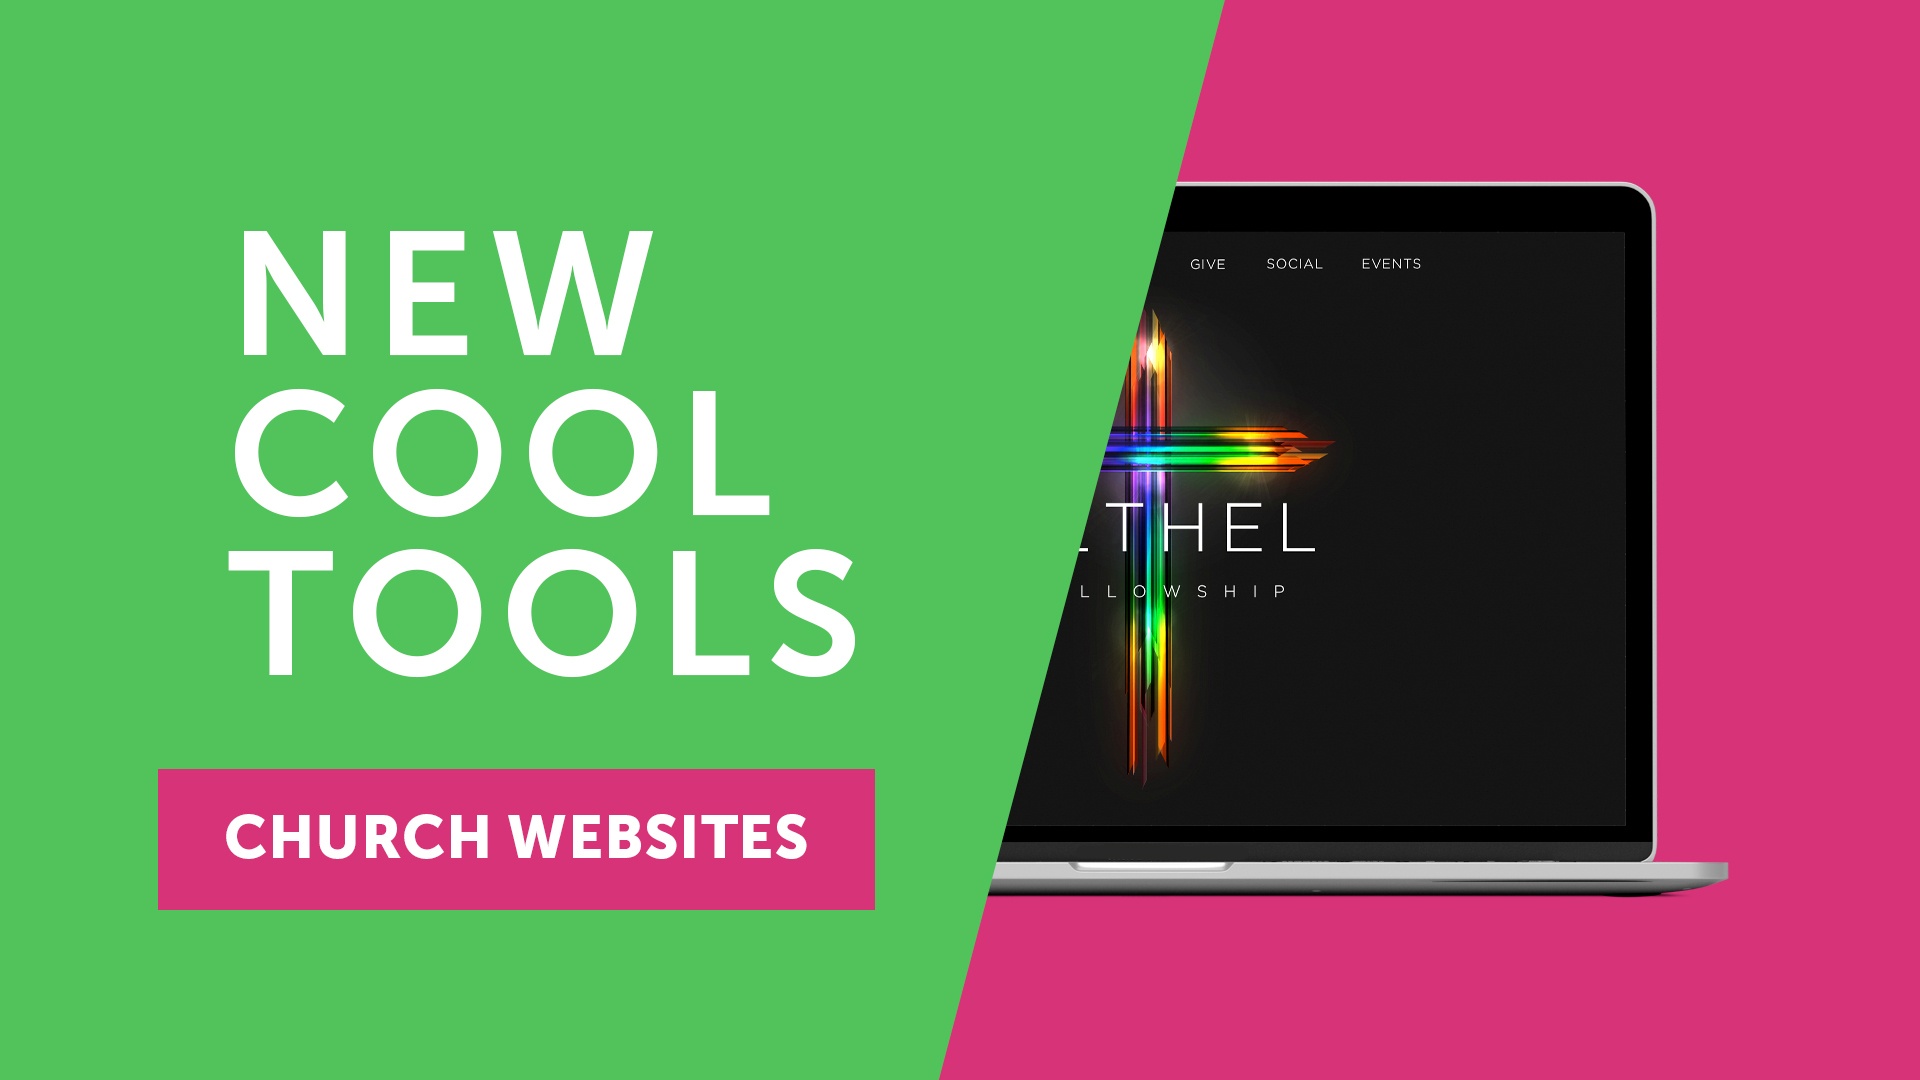 Sharefaith Church Websites - New Cool Tools!